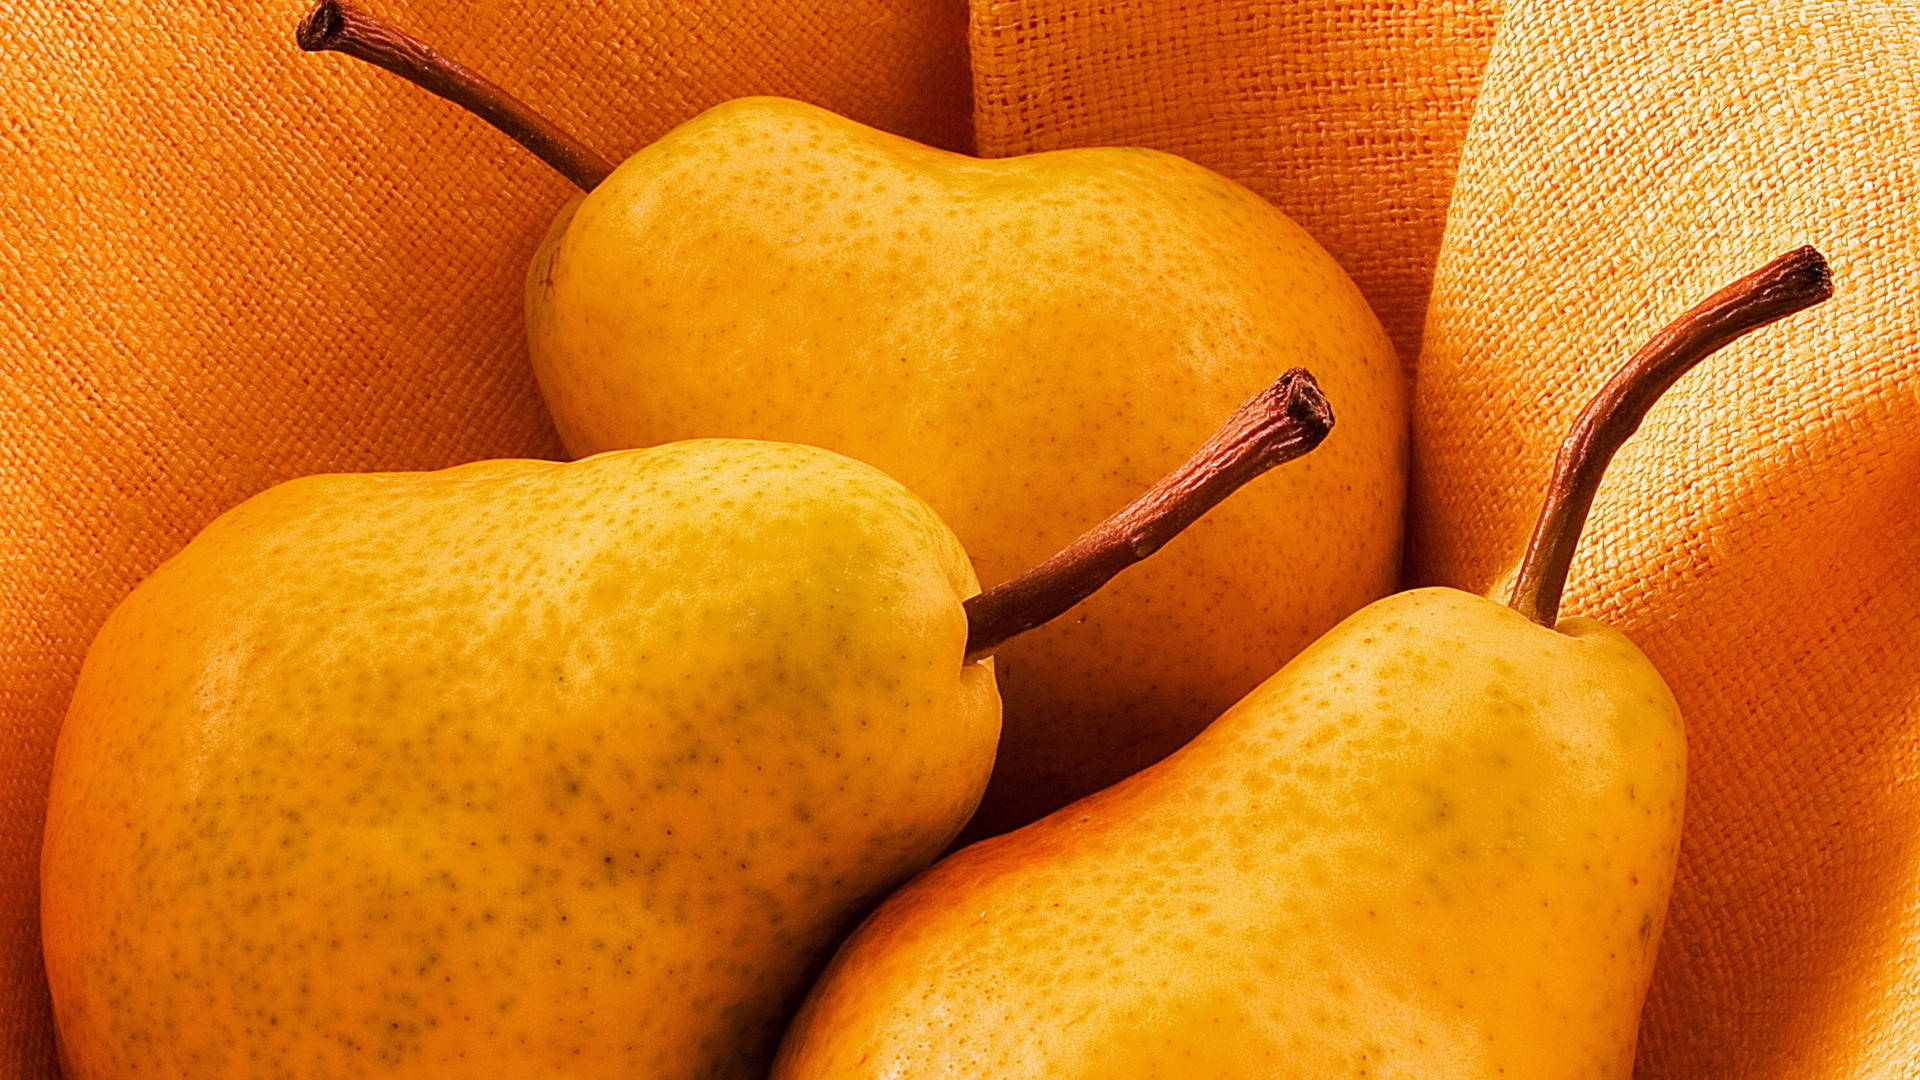 Trepäronfrukter. Wallpaper